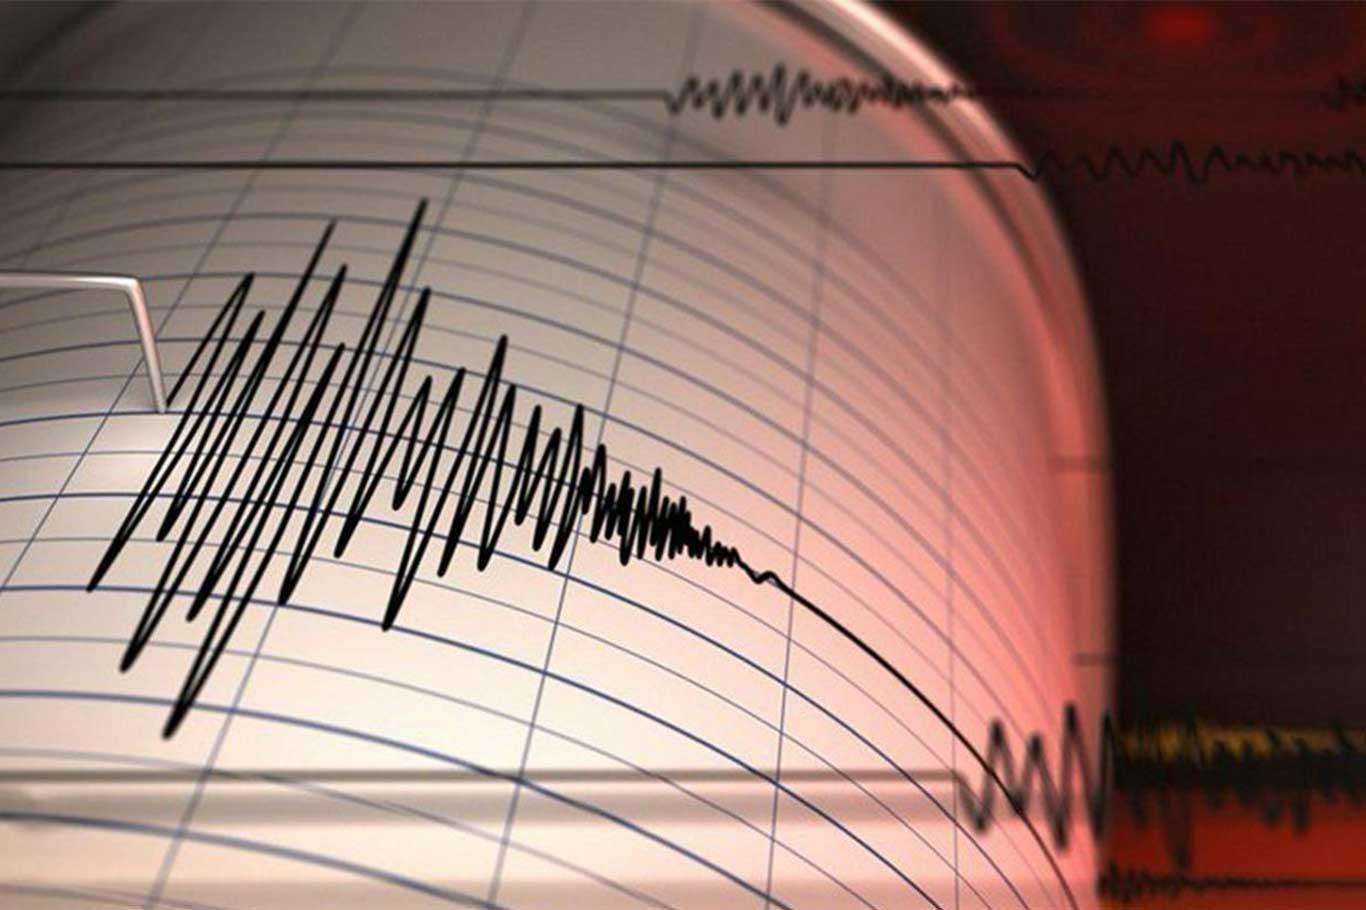 3.9 magnitude earthquake occurs off Turkey’s Aegean Sea coast